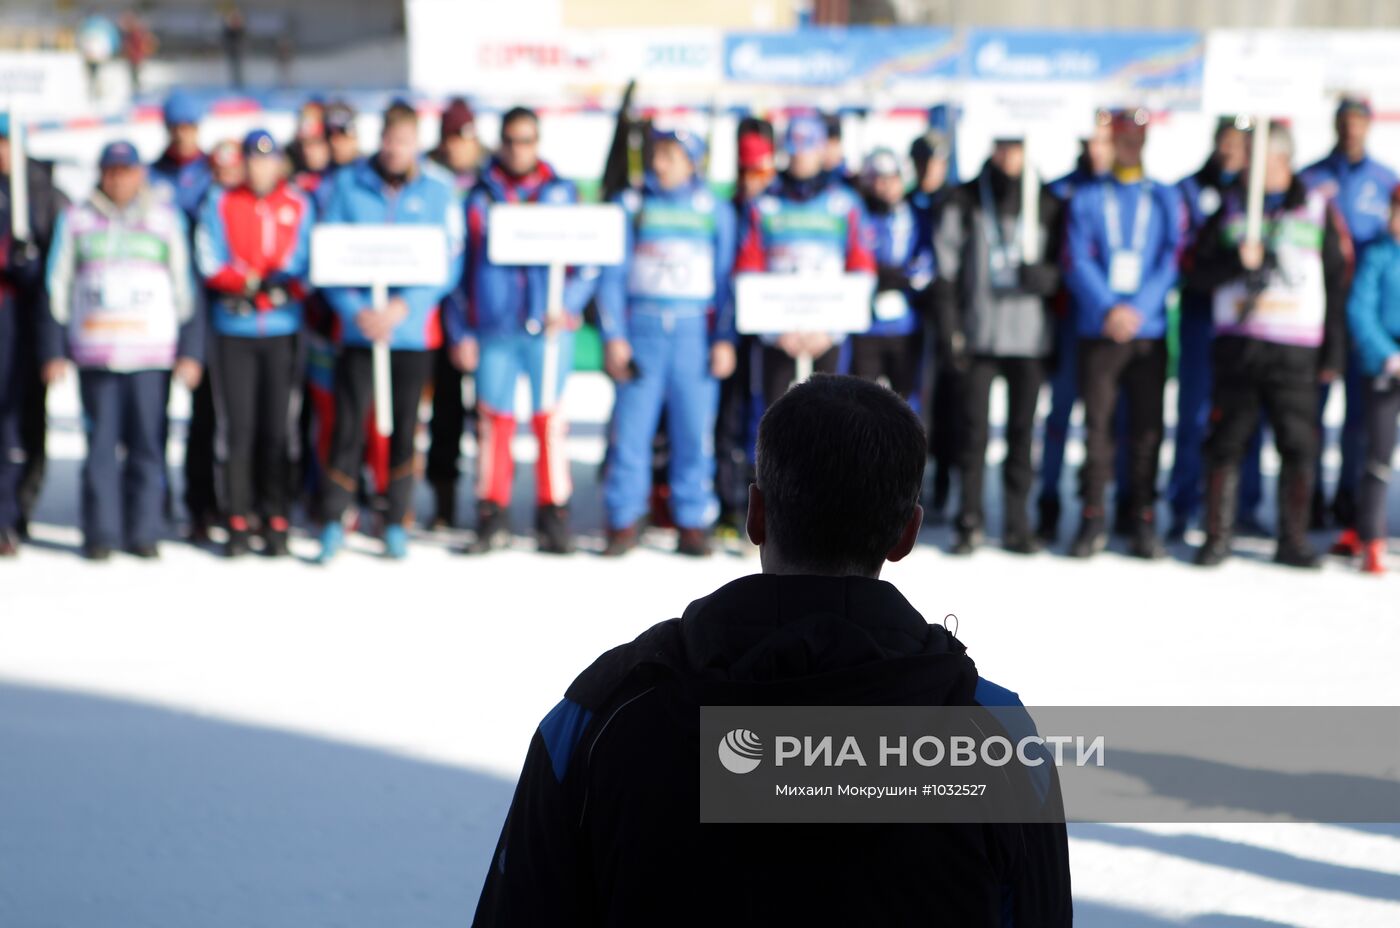 М.Прохоров посетил лыжно-биатлонный комплекс в Красной Поляне